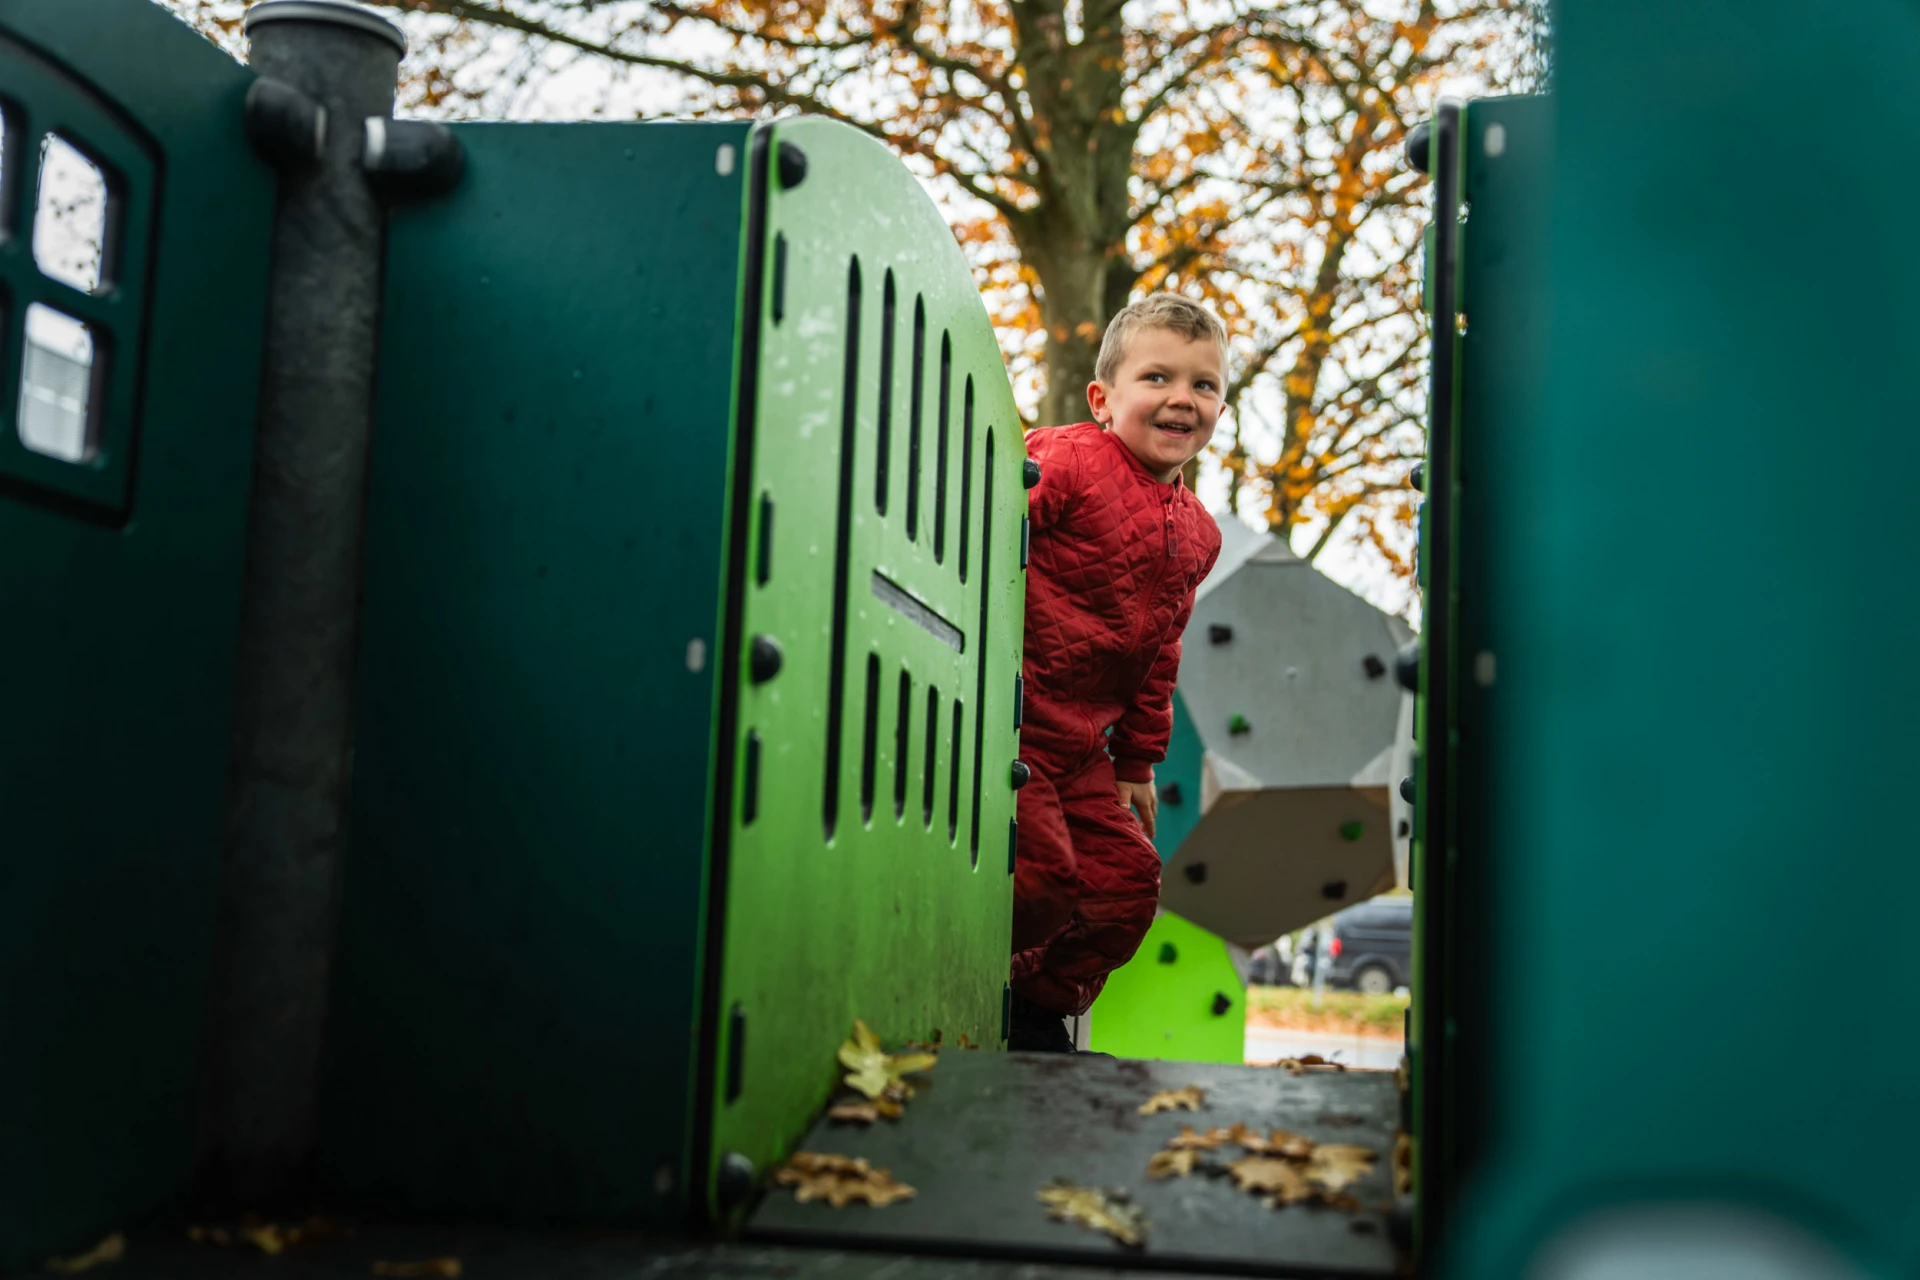 Junge in roter Kleidung spielt auf einer umweltfreundlicheren Spielplatzanlage